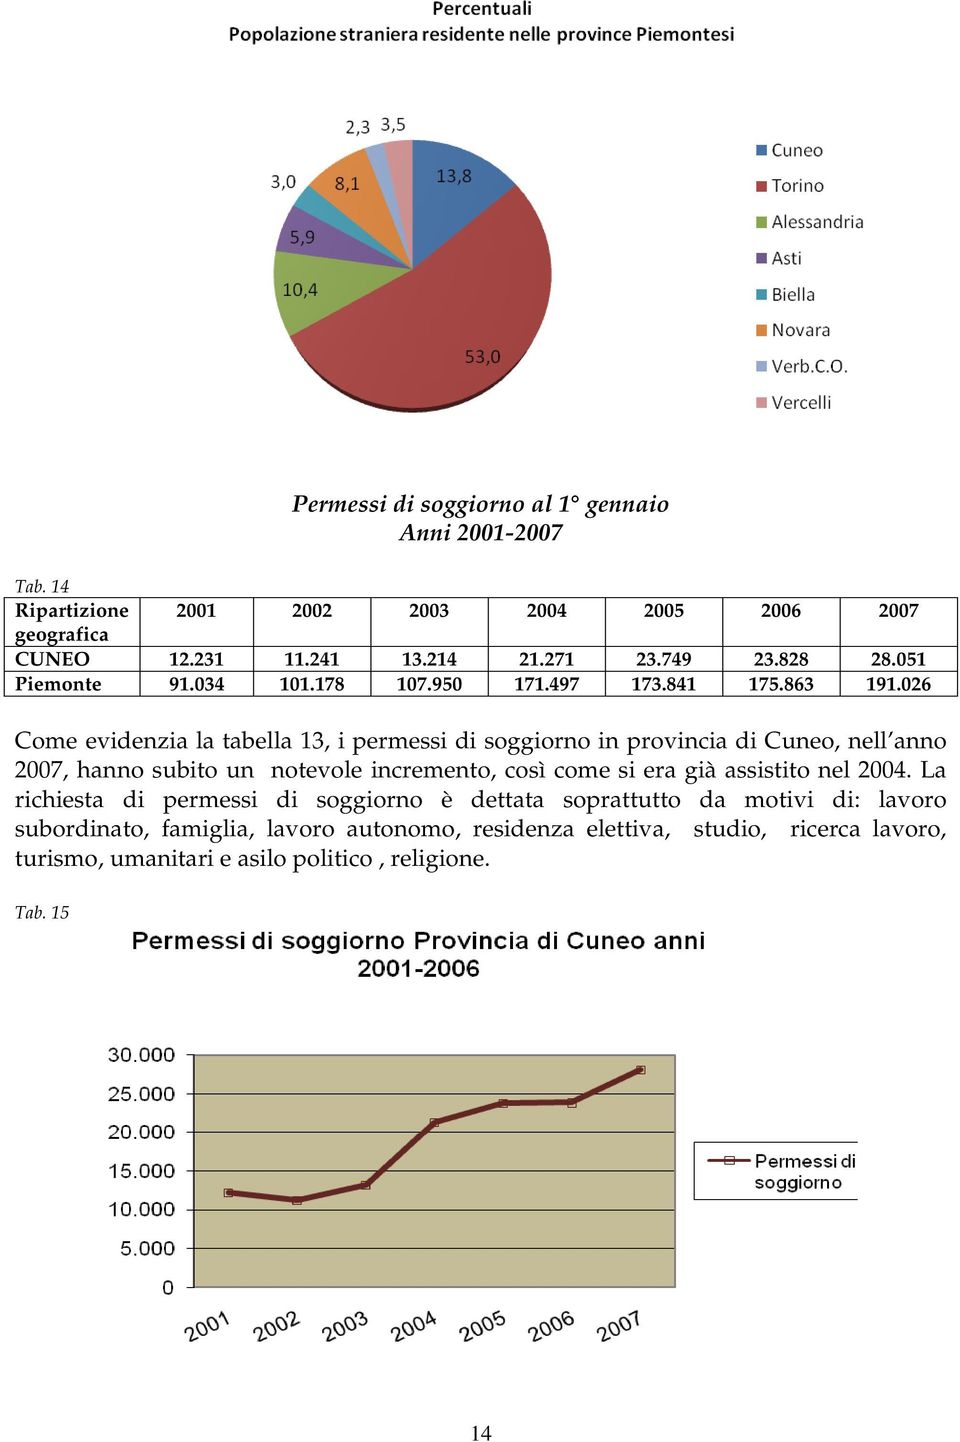 026 Come evidenzia la tabella 13, i permessi di soggiorno in provincia di Cuneo, nell anno 2007, hanno subito un notevole incremento, così come si era già